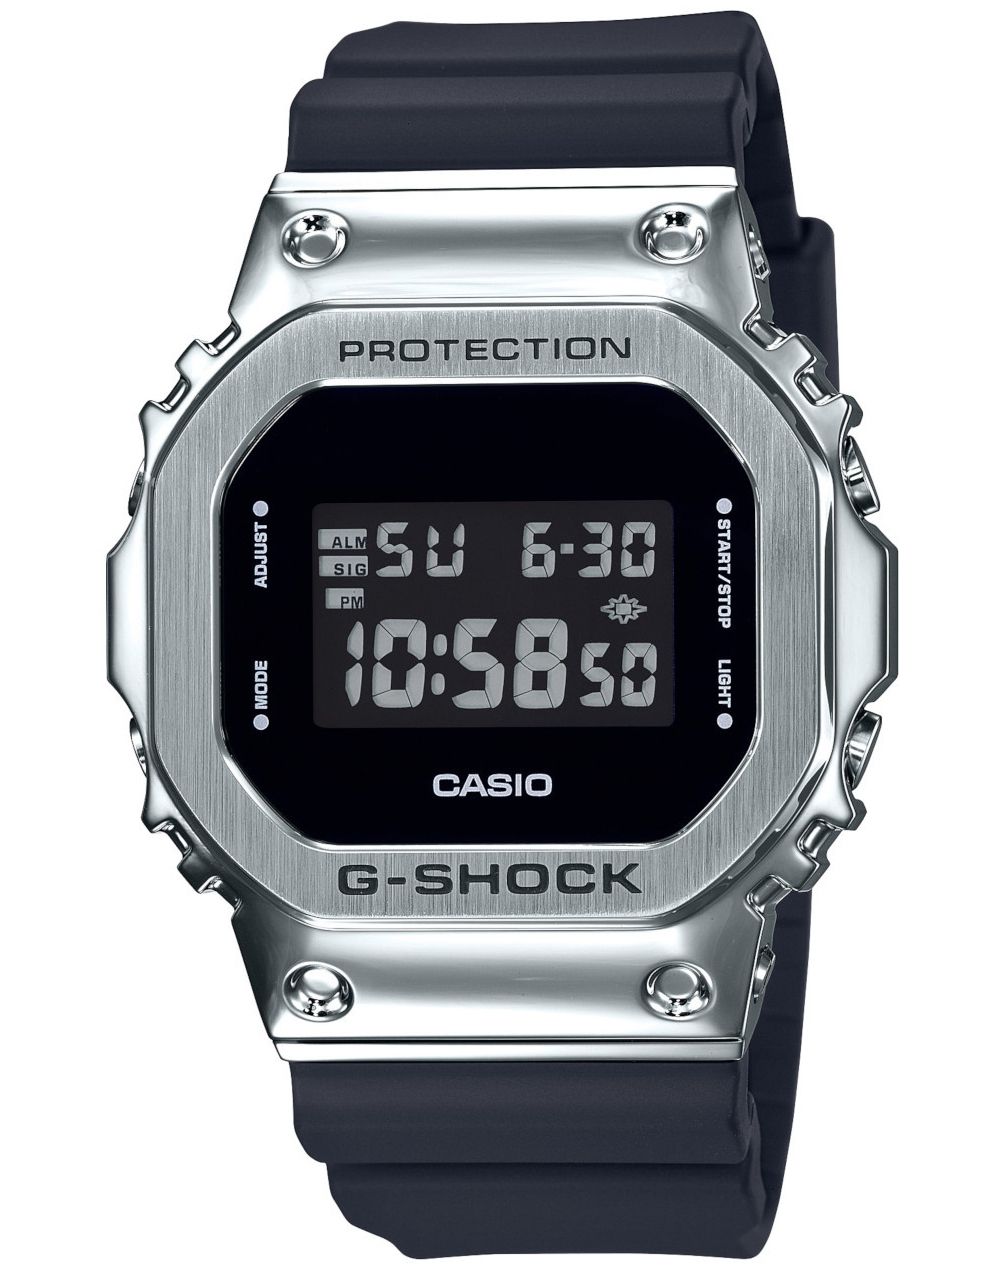 Thicken Hovedsagelig Vær venlig G-Shock ure fra Casio | Fri fragt | Officiel forhandler